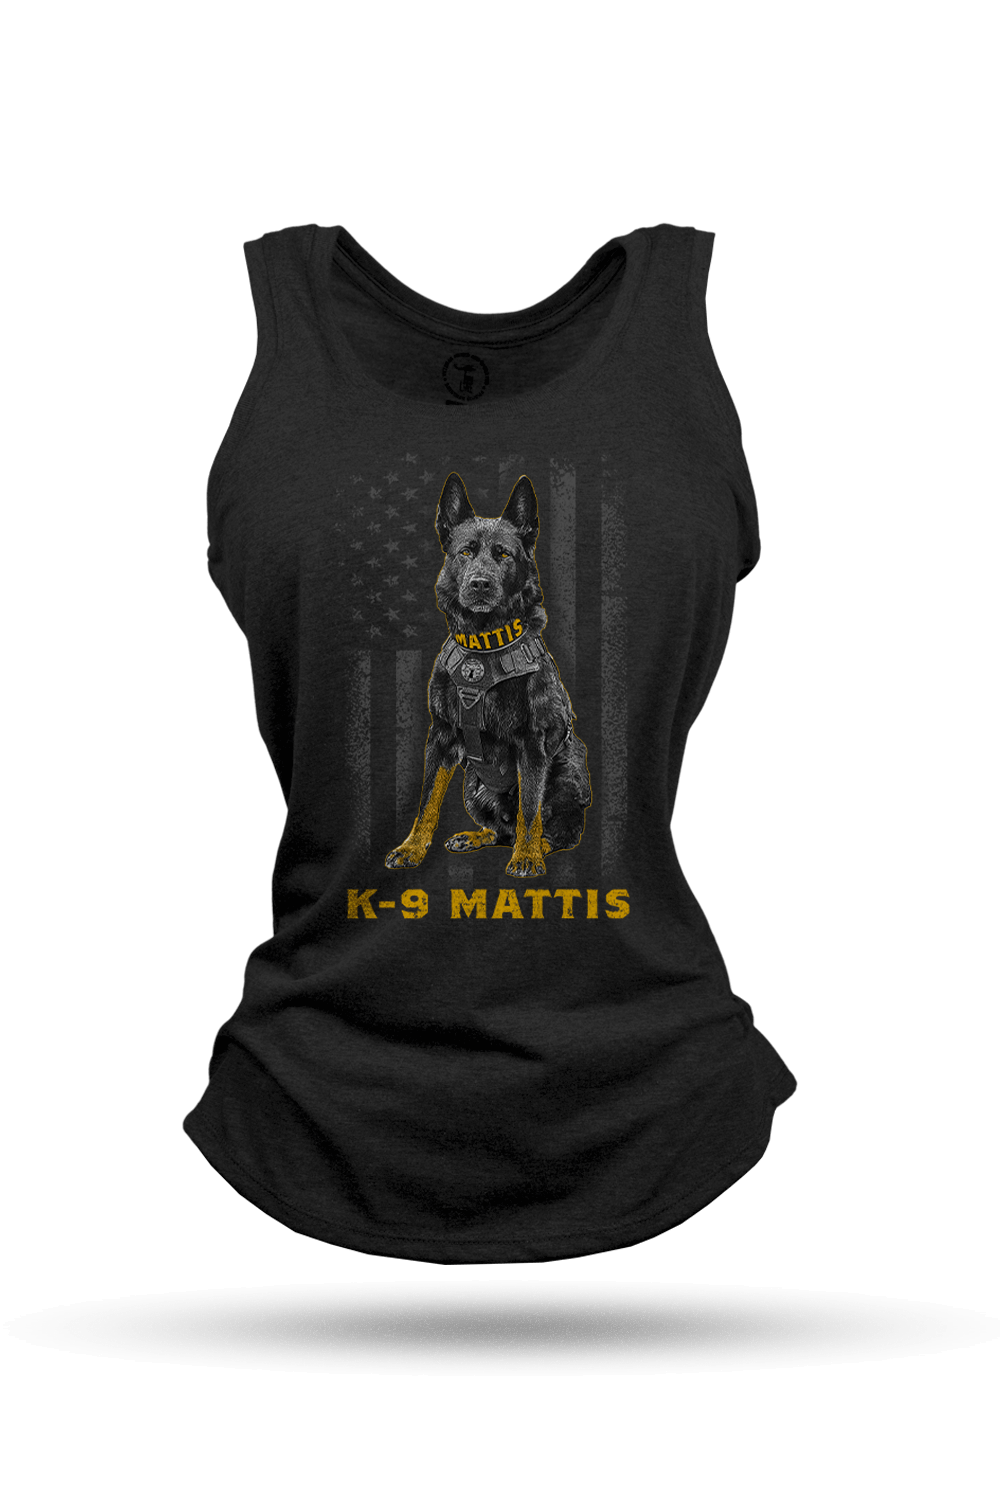 Women's Racerback Tank - Project K-9 Hero K-9 Mattis